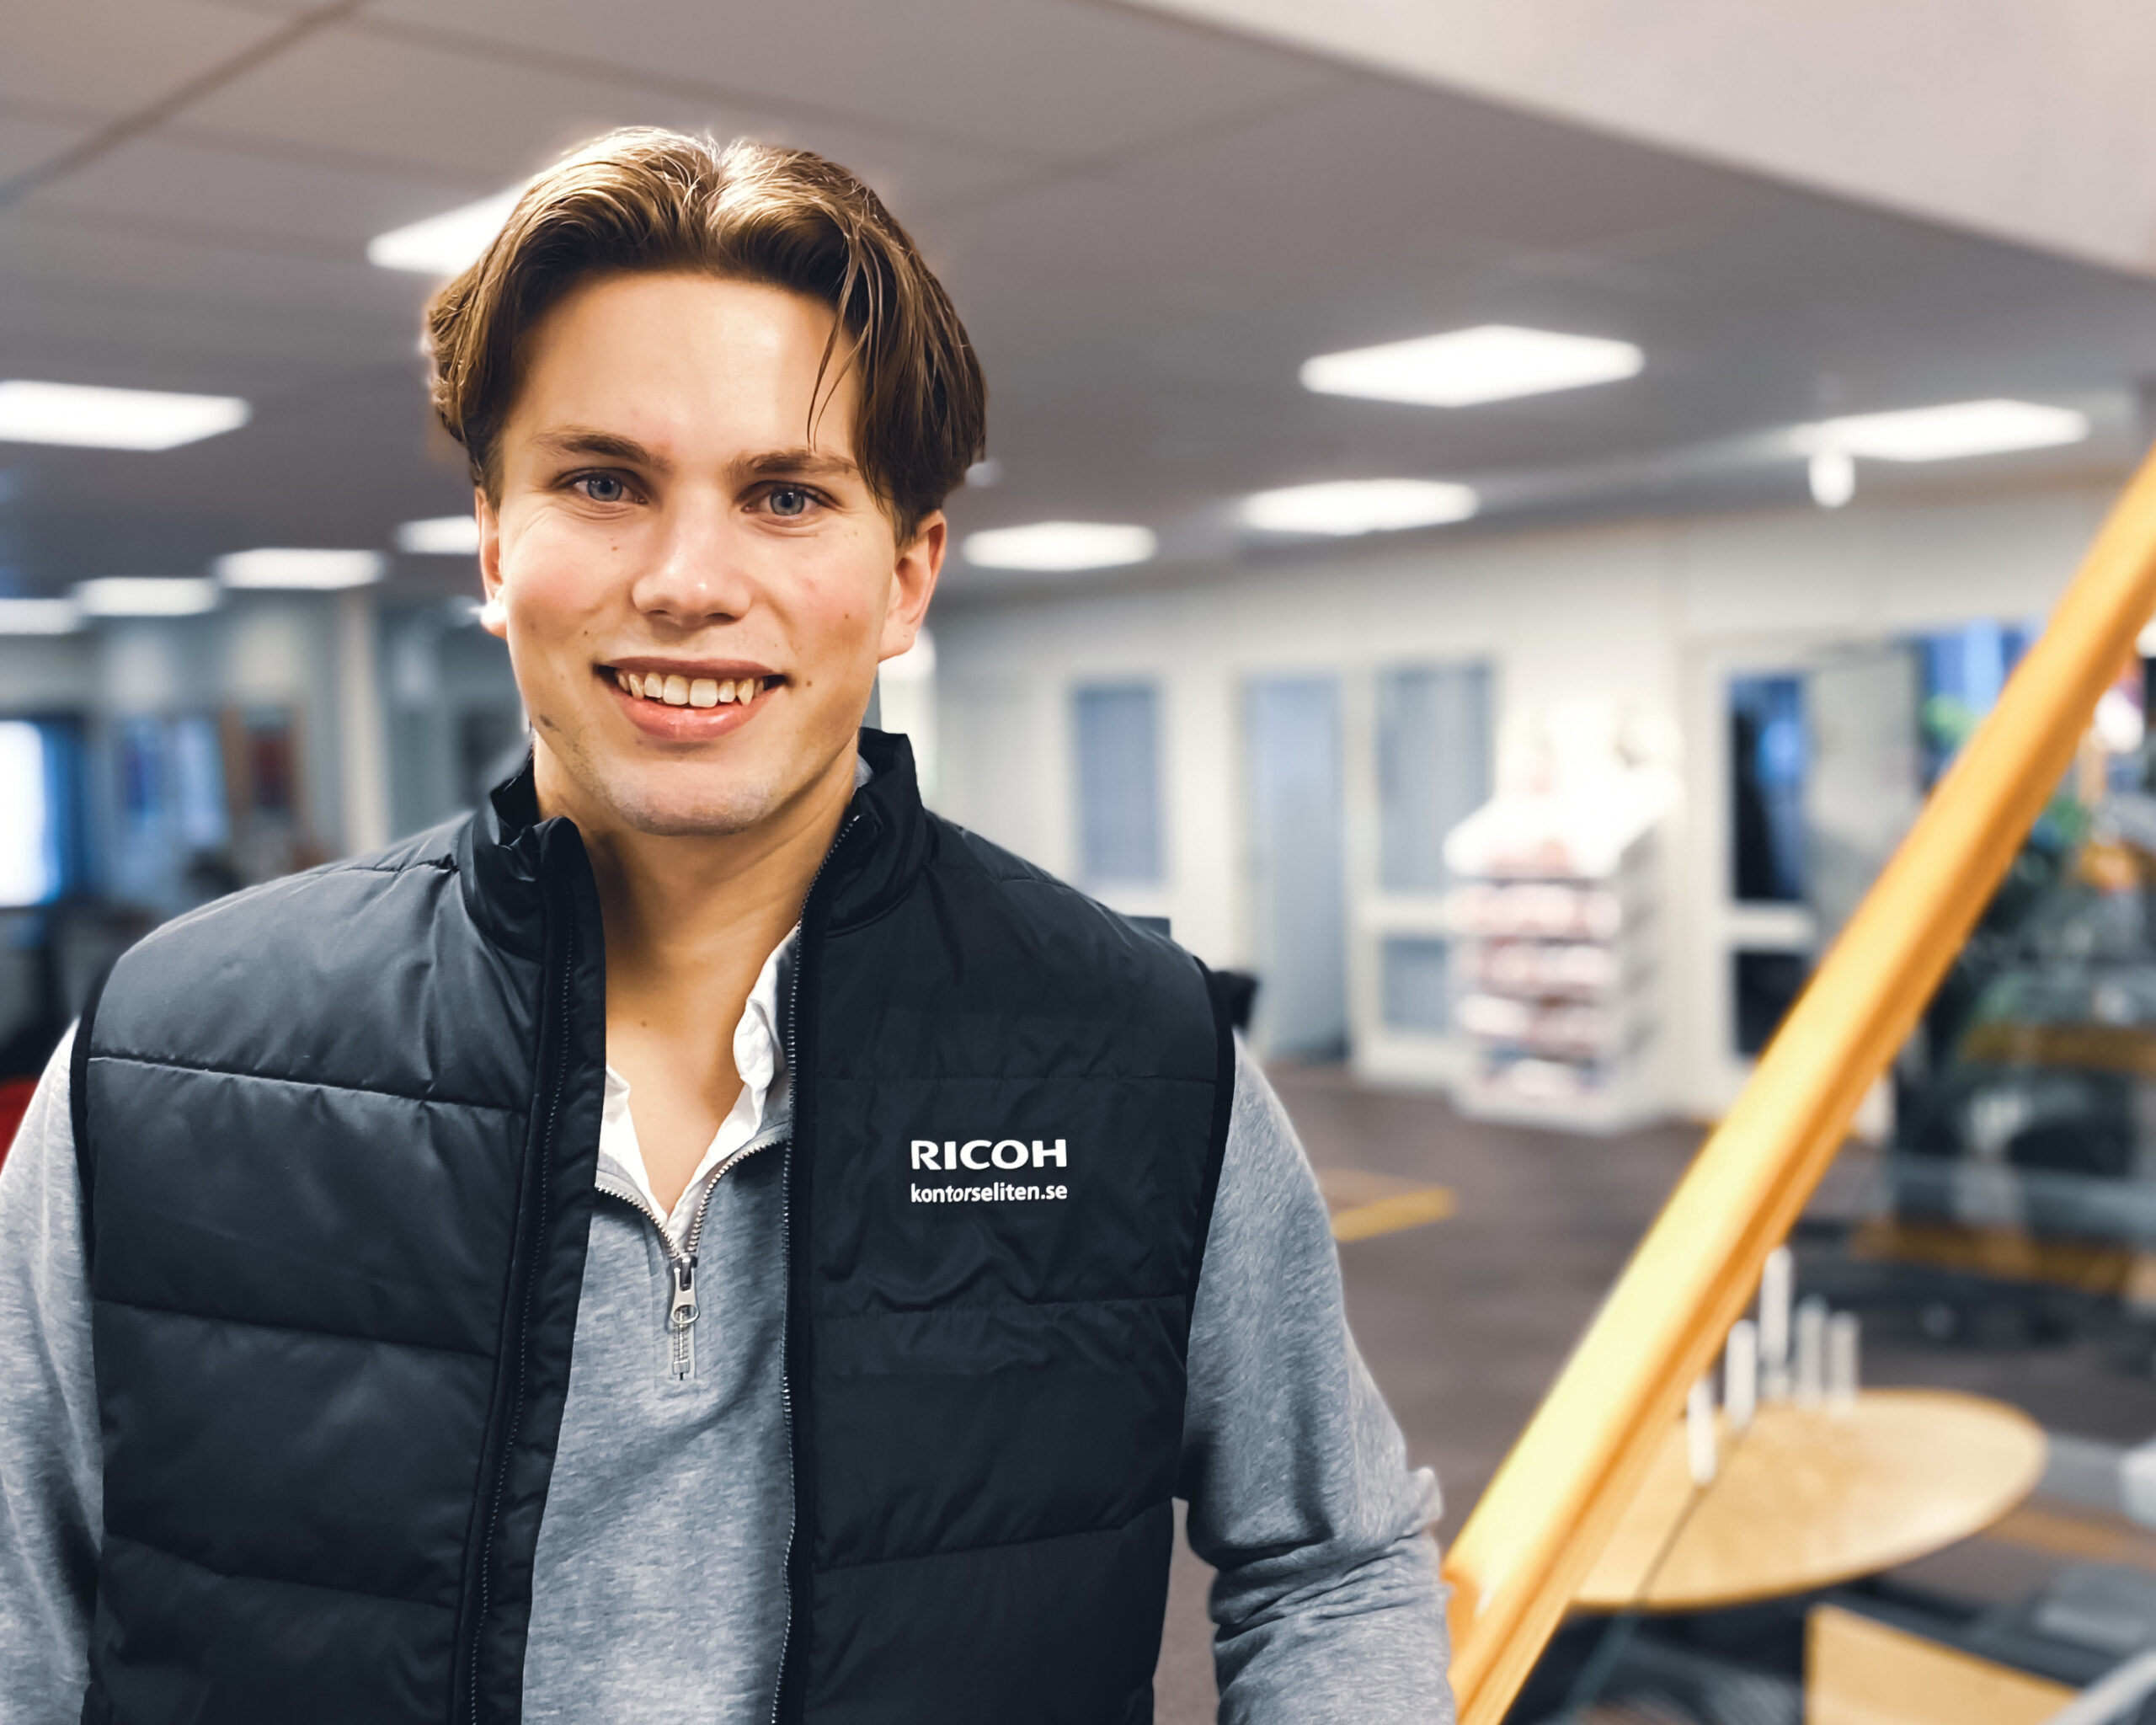 Hugo Holmström - Försäljning av Telavox telefoni och växeltjänster. Målvakt Grums IK Hockey